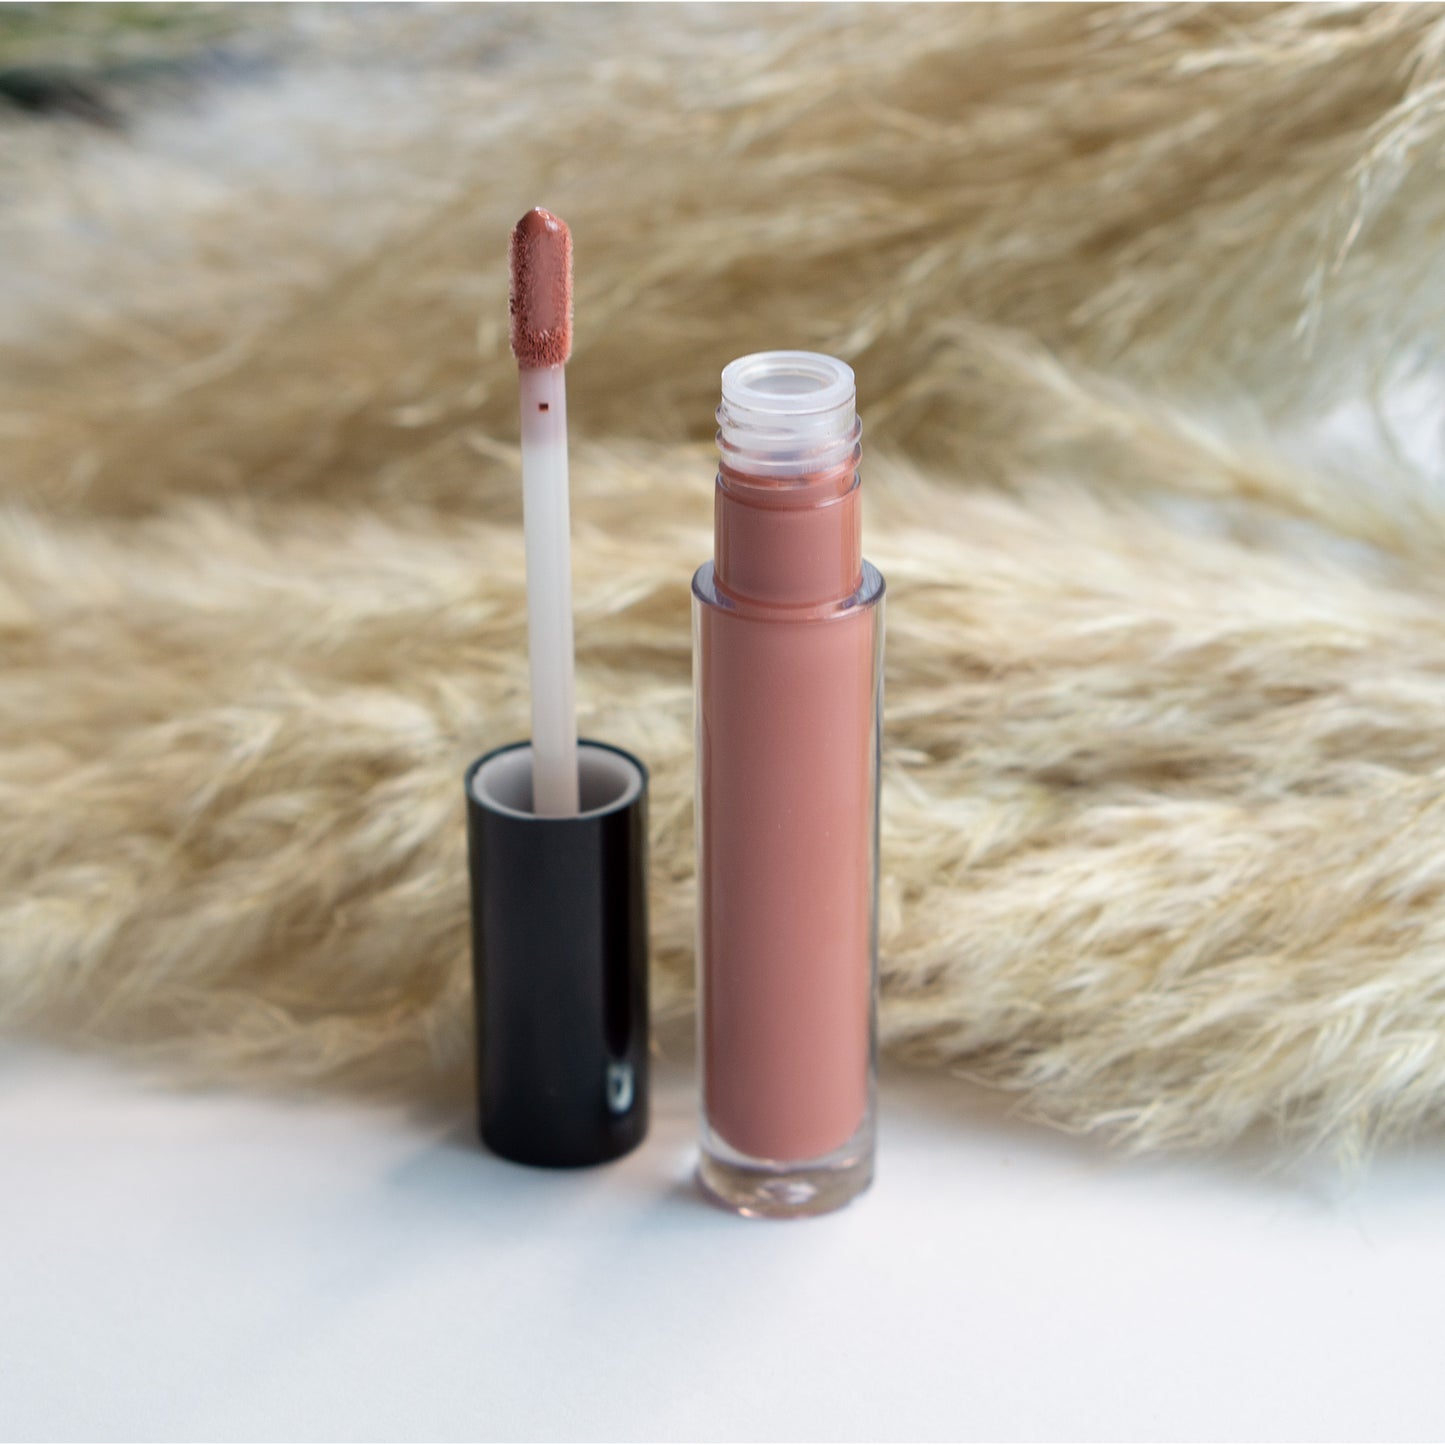 Poutastic Liquid Lip Gloss - Crimson | Sheer Tint for Fuller Lips, 5 mL / 0.17 fl oz 